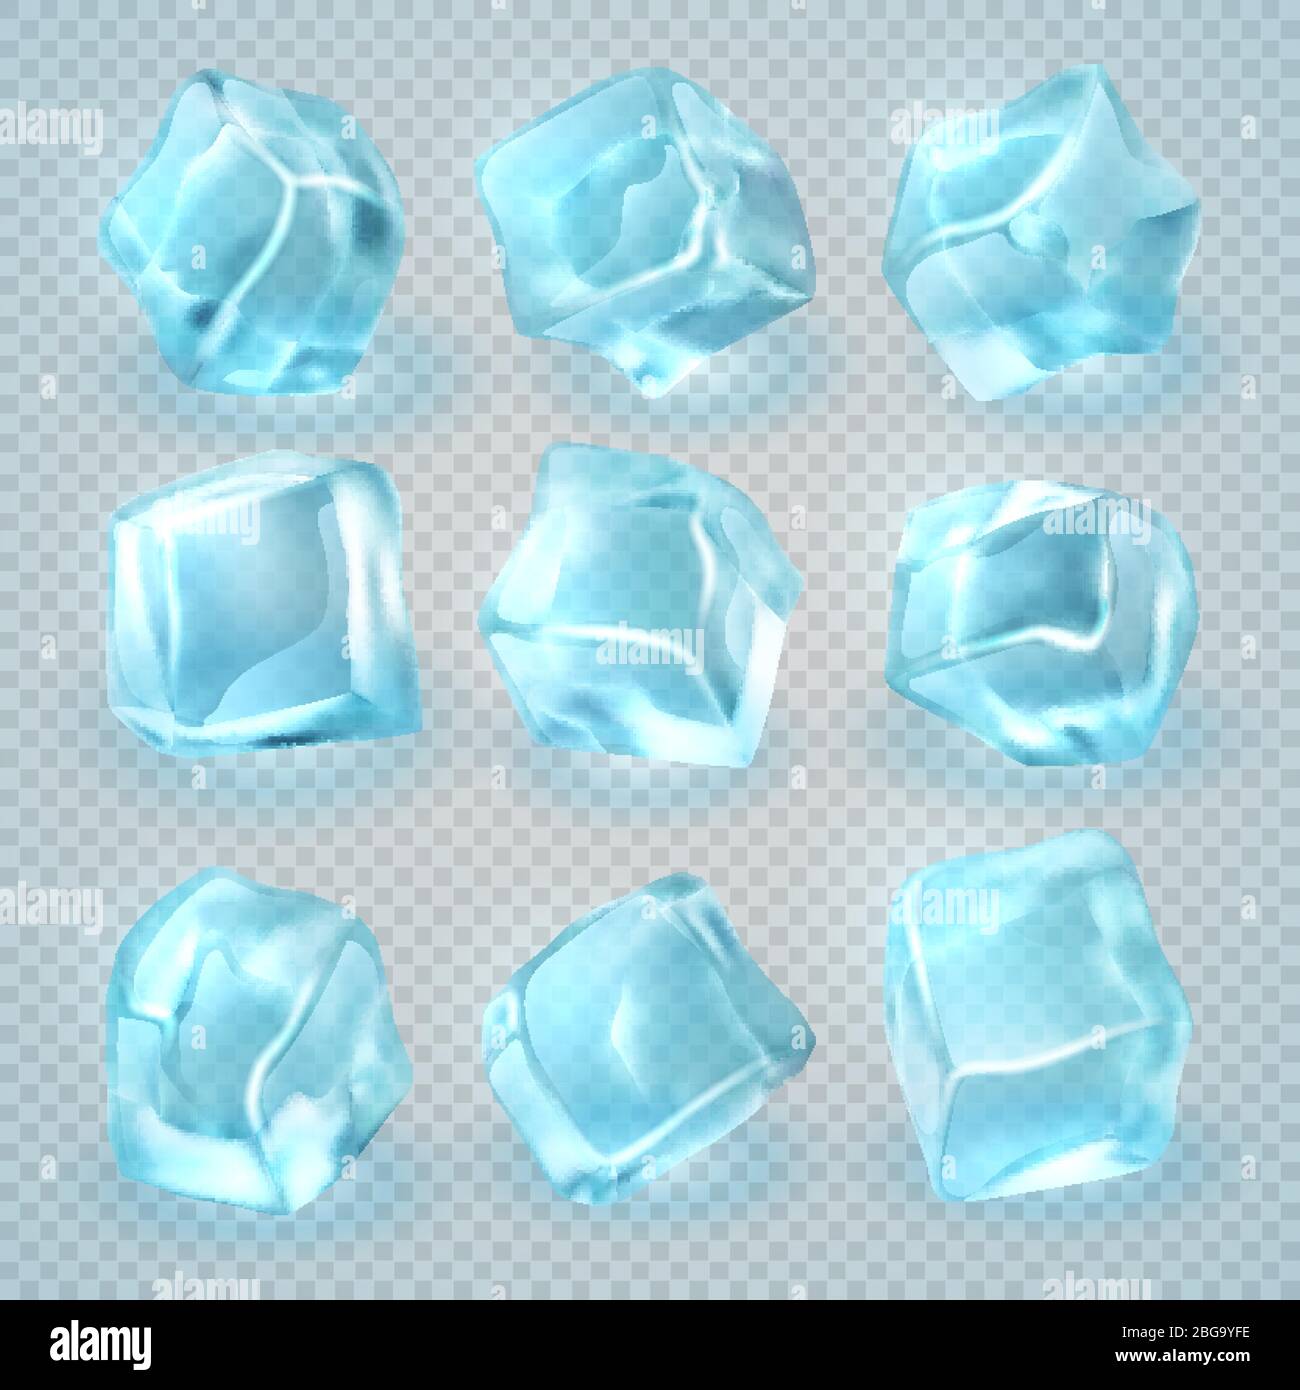 Glaçons réalistes isolés sur fond transparent. Illustration transparente du cube de glace 3D vectoriel Illustration de Vecteur